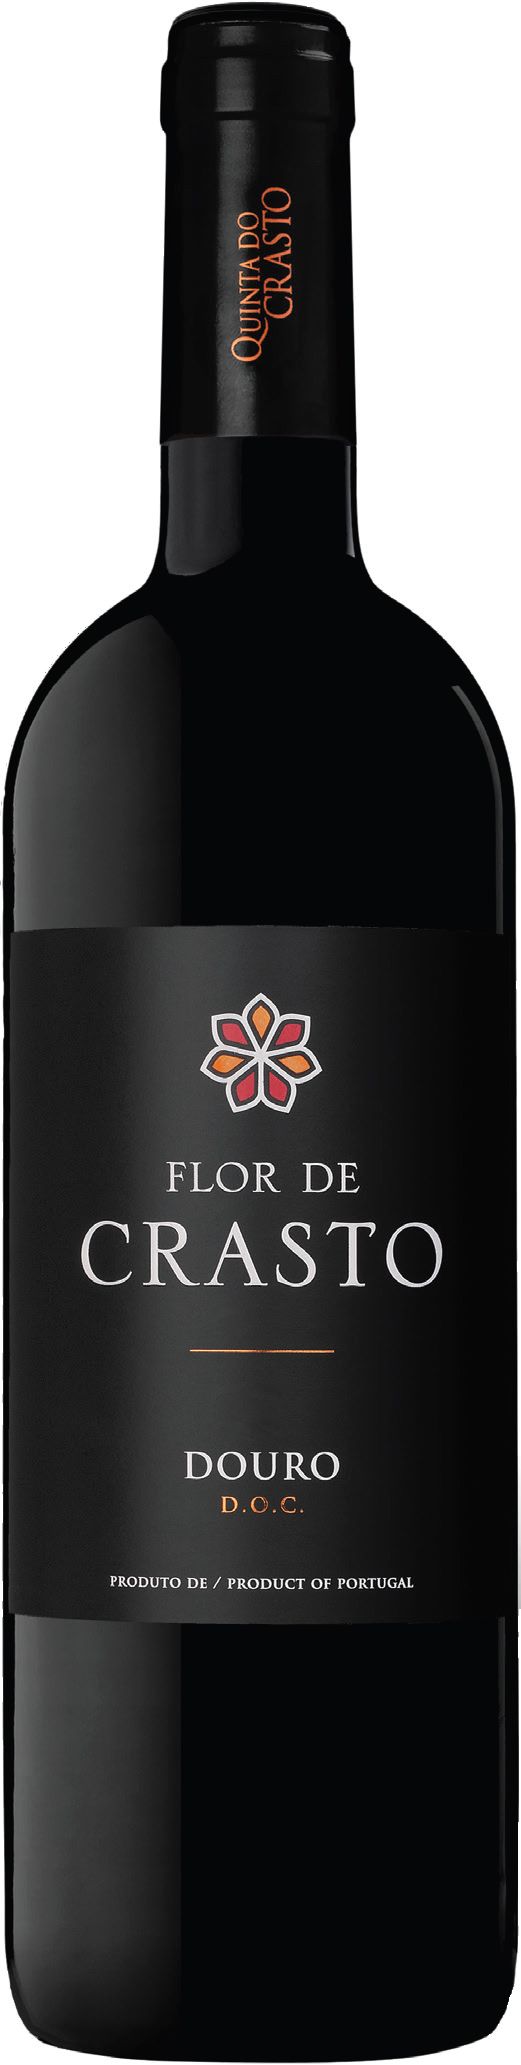 Quinta Do Crasto, Flor De Crasto Tinto, 2015